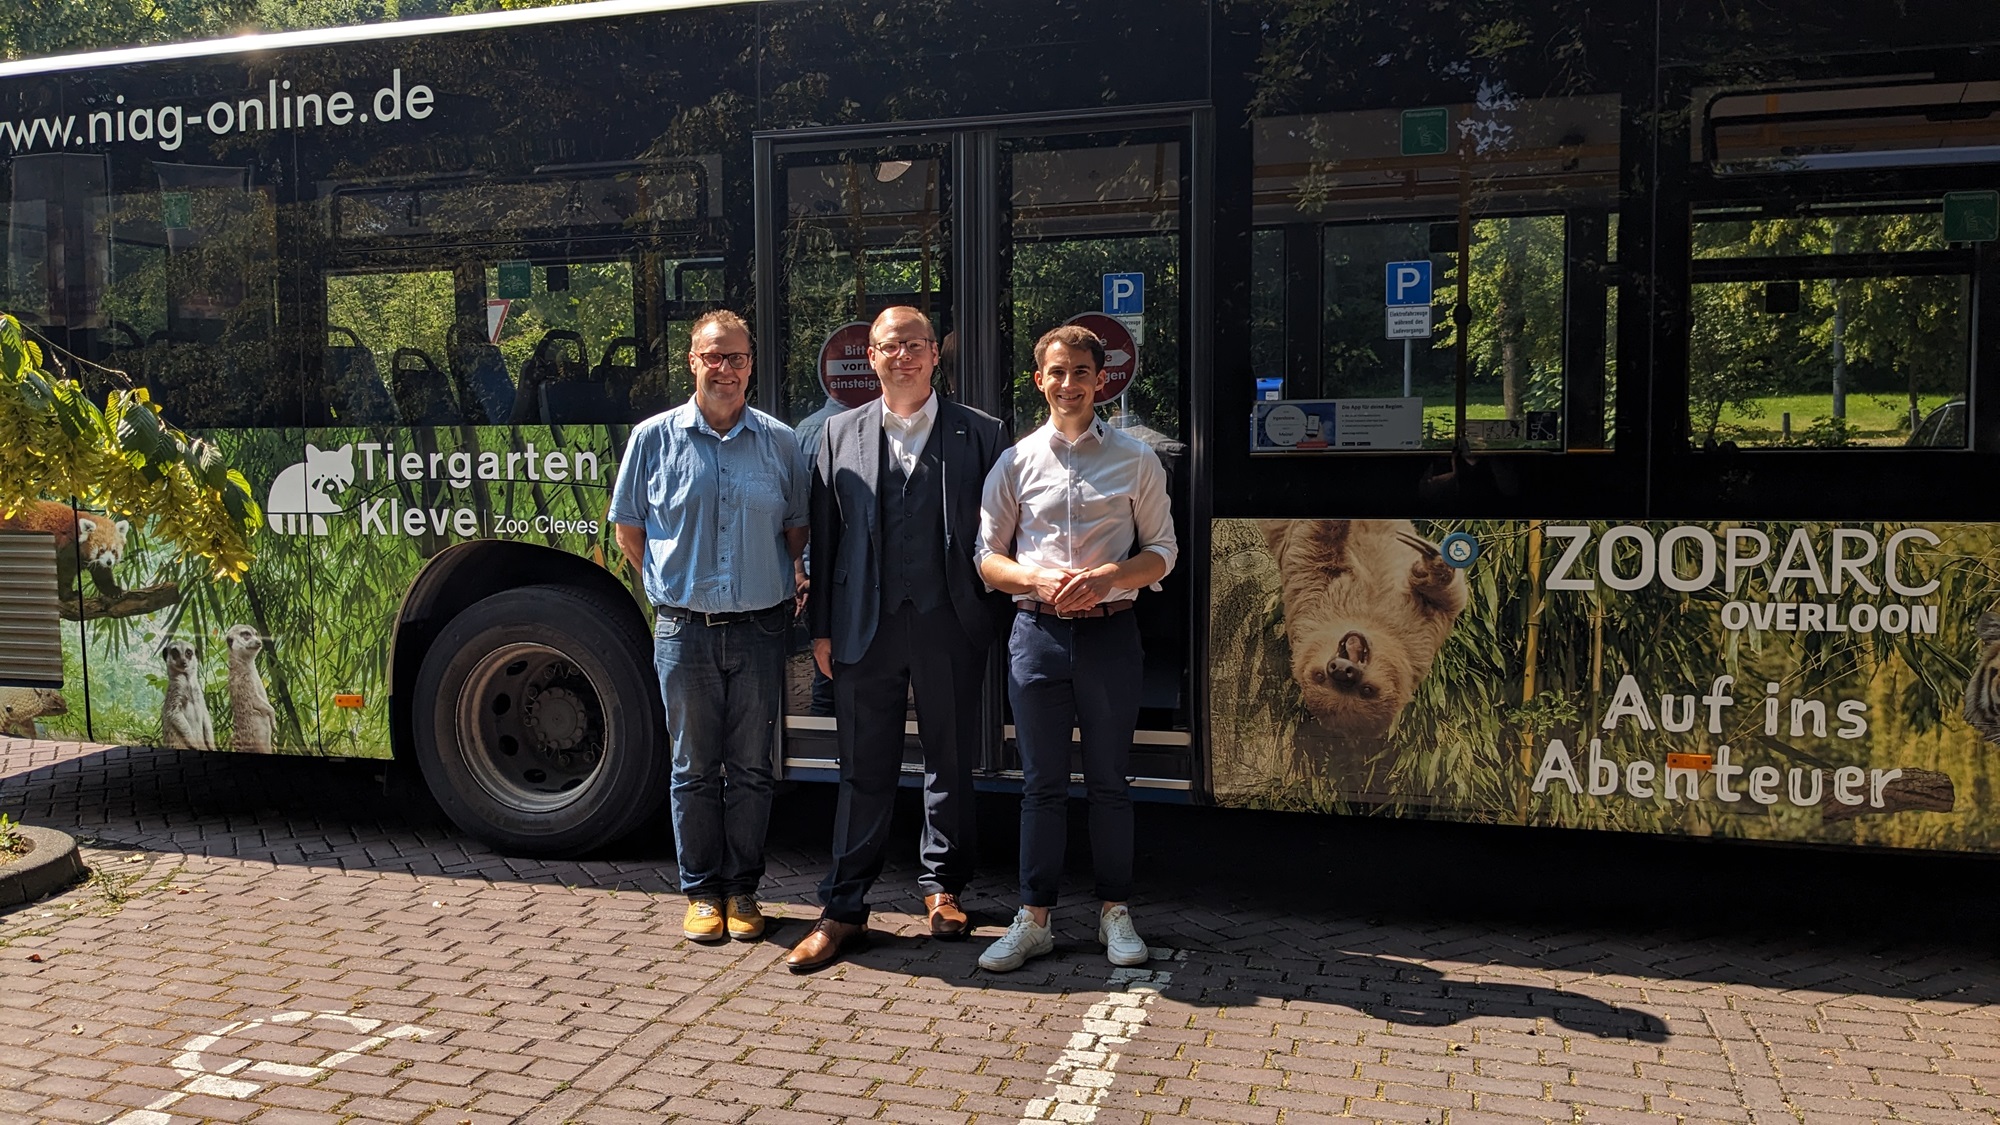 vlnr. Andreas Driessen (RegioStar Media), Tobias Jakubowski (Look Busreisen) und Martin Polotzek (Tiergarten Kleve) vor dem Tiergarten Kleve-ZooParc Overloon-Bus